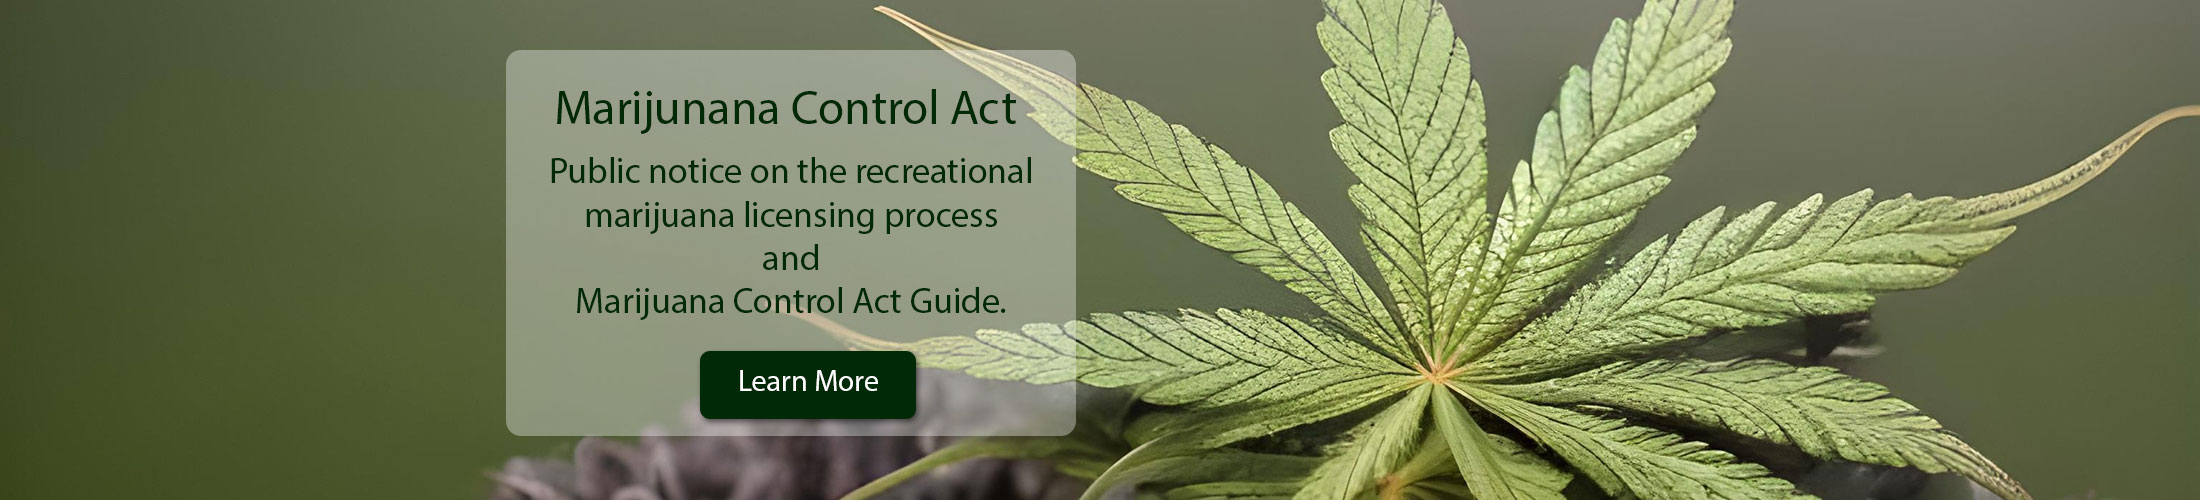 Marijuana Control Act